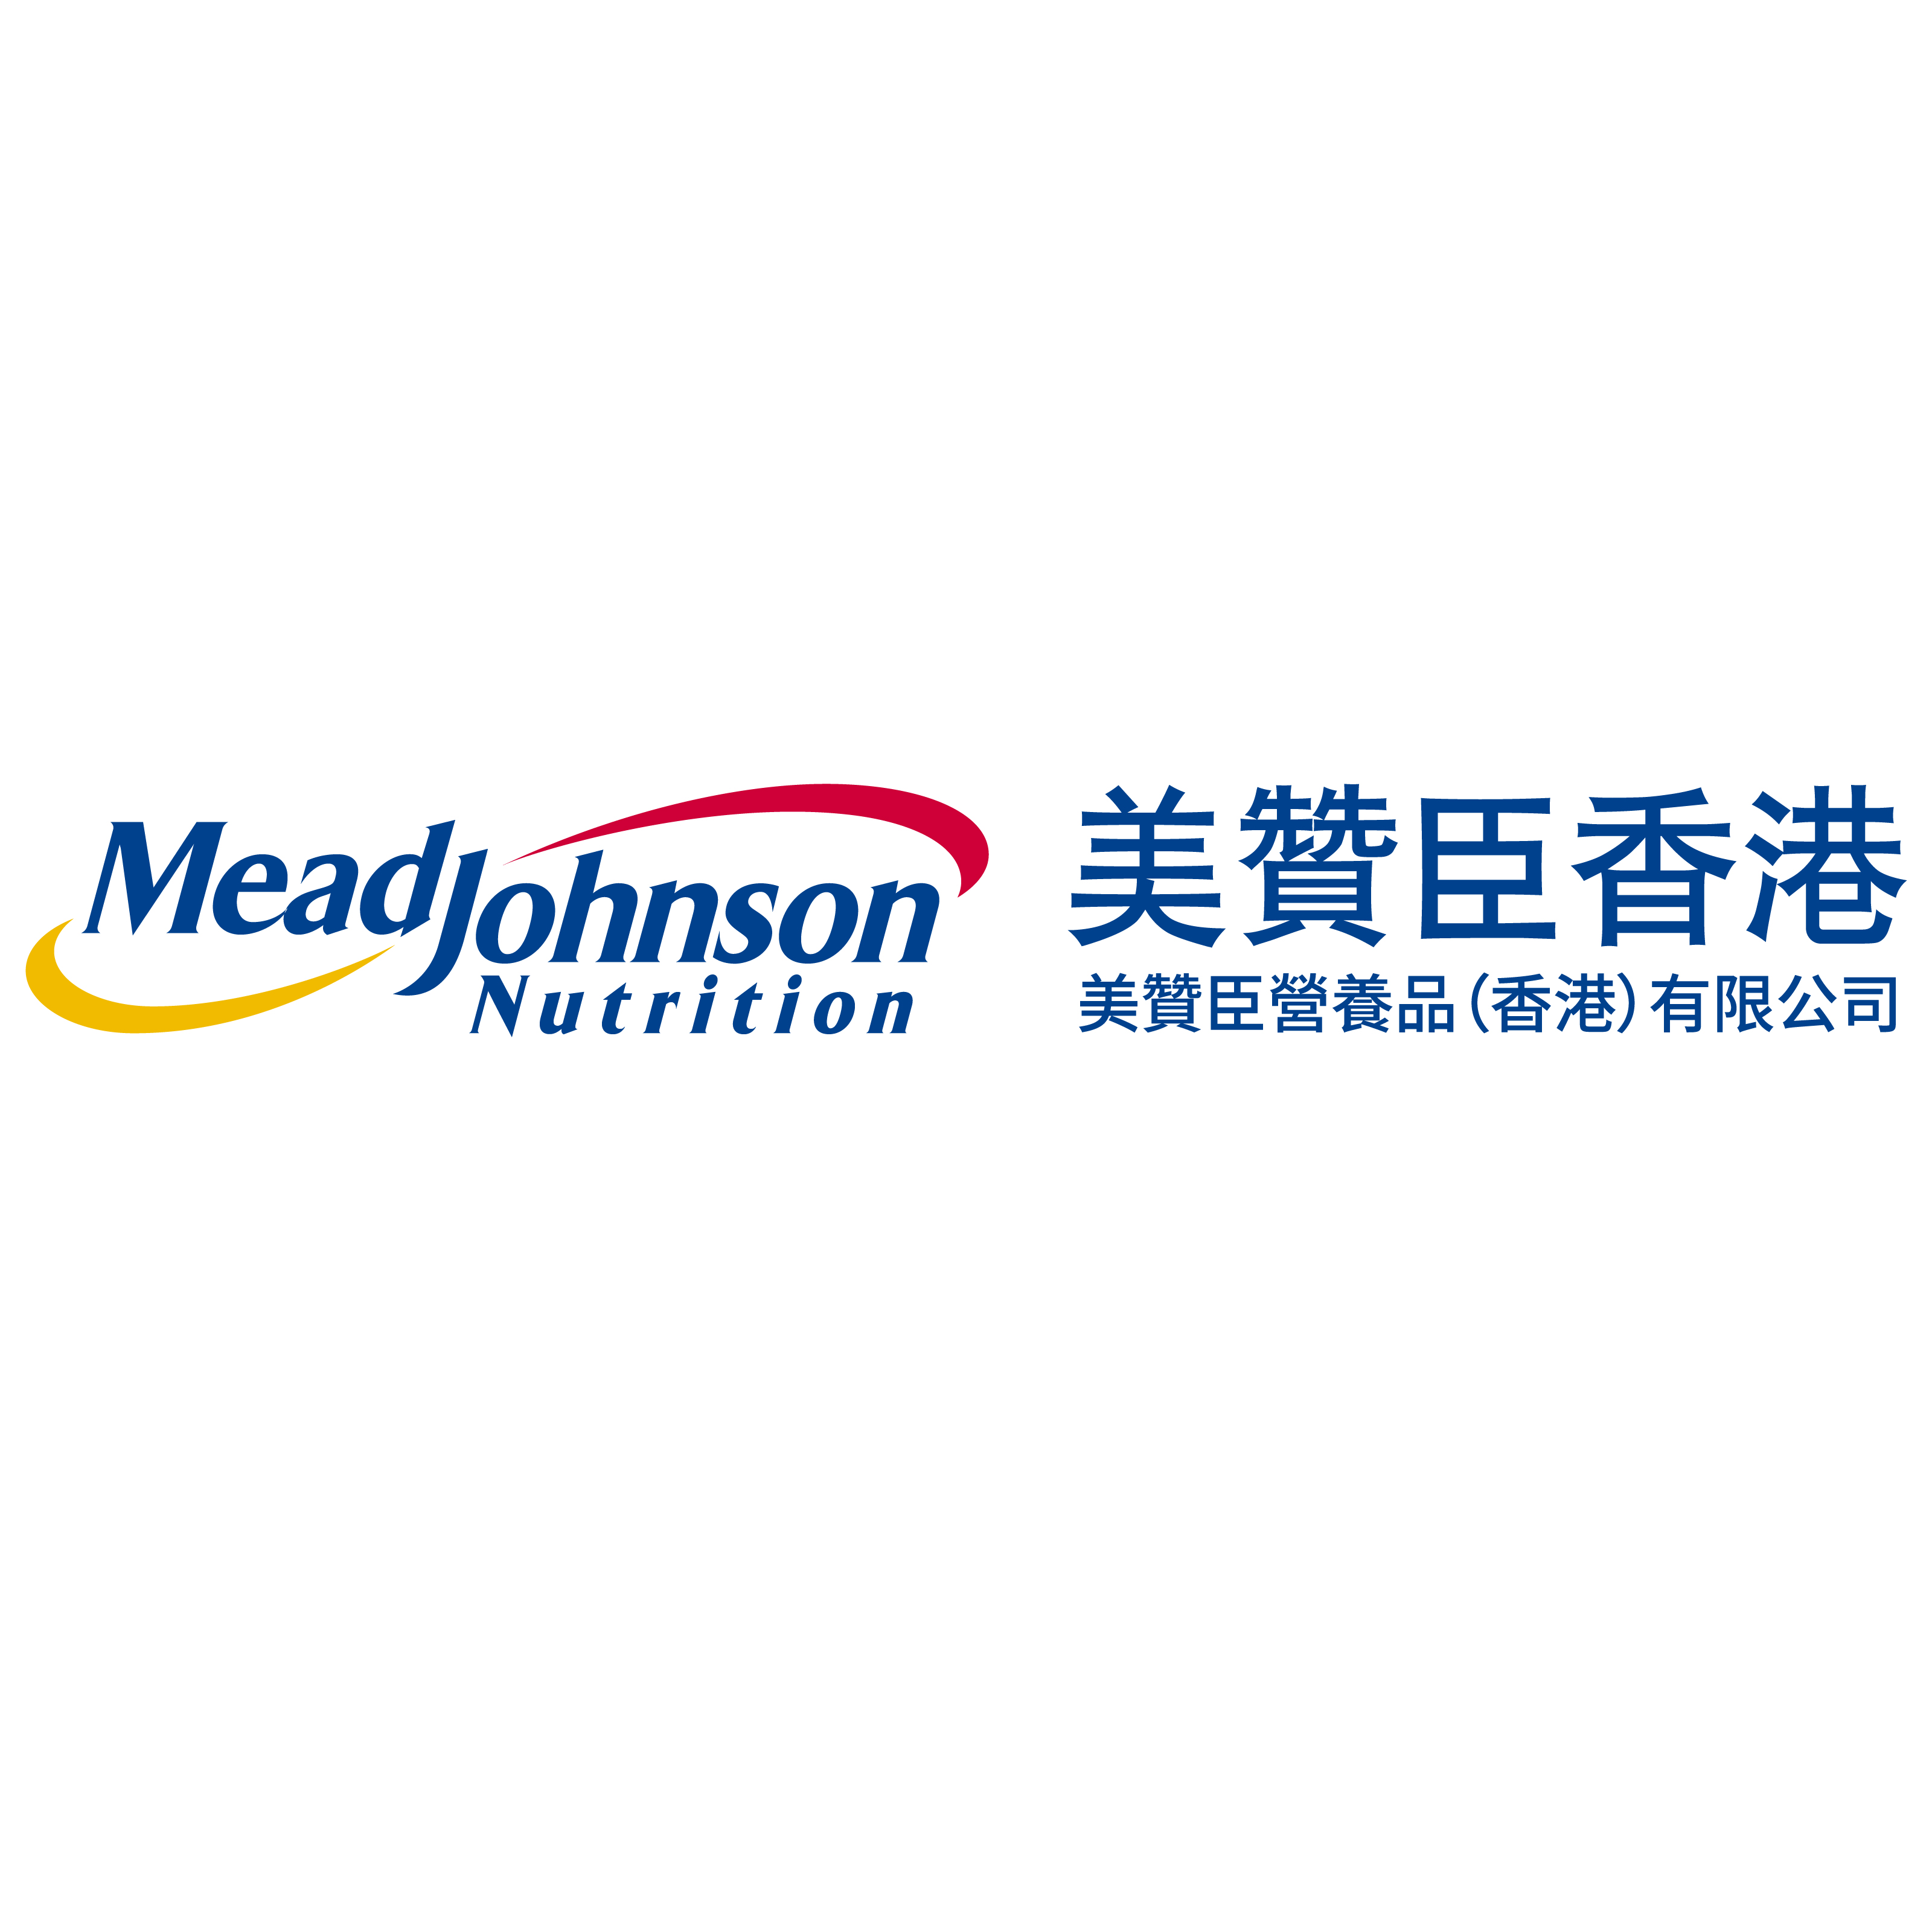 Mead Johnson Company